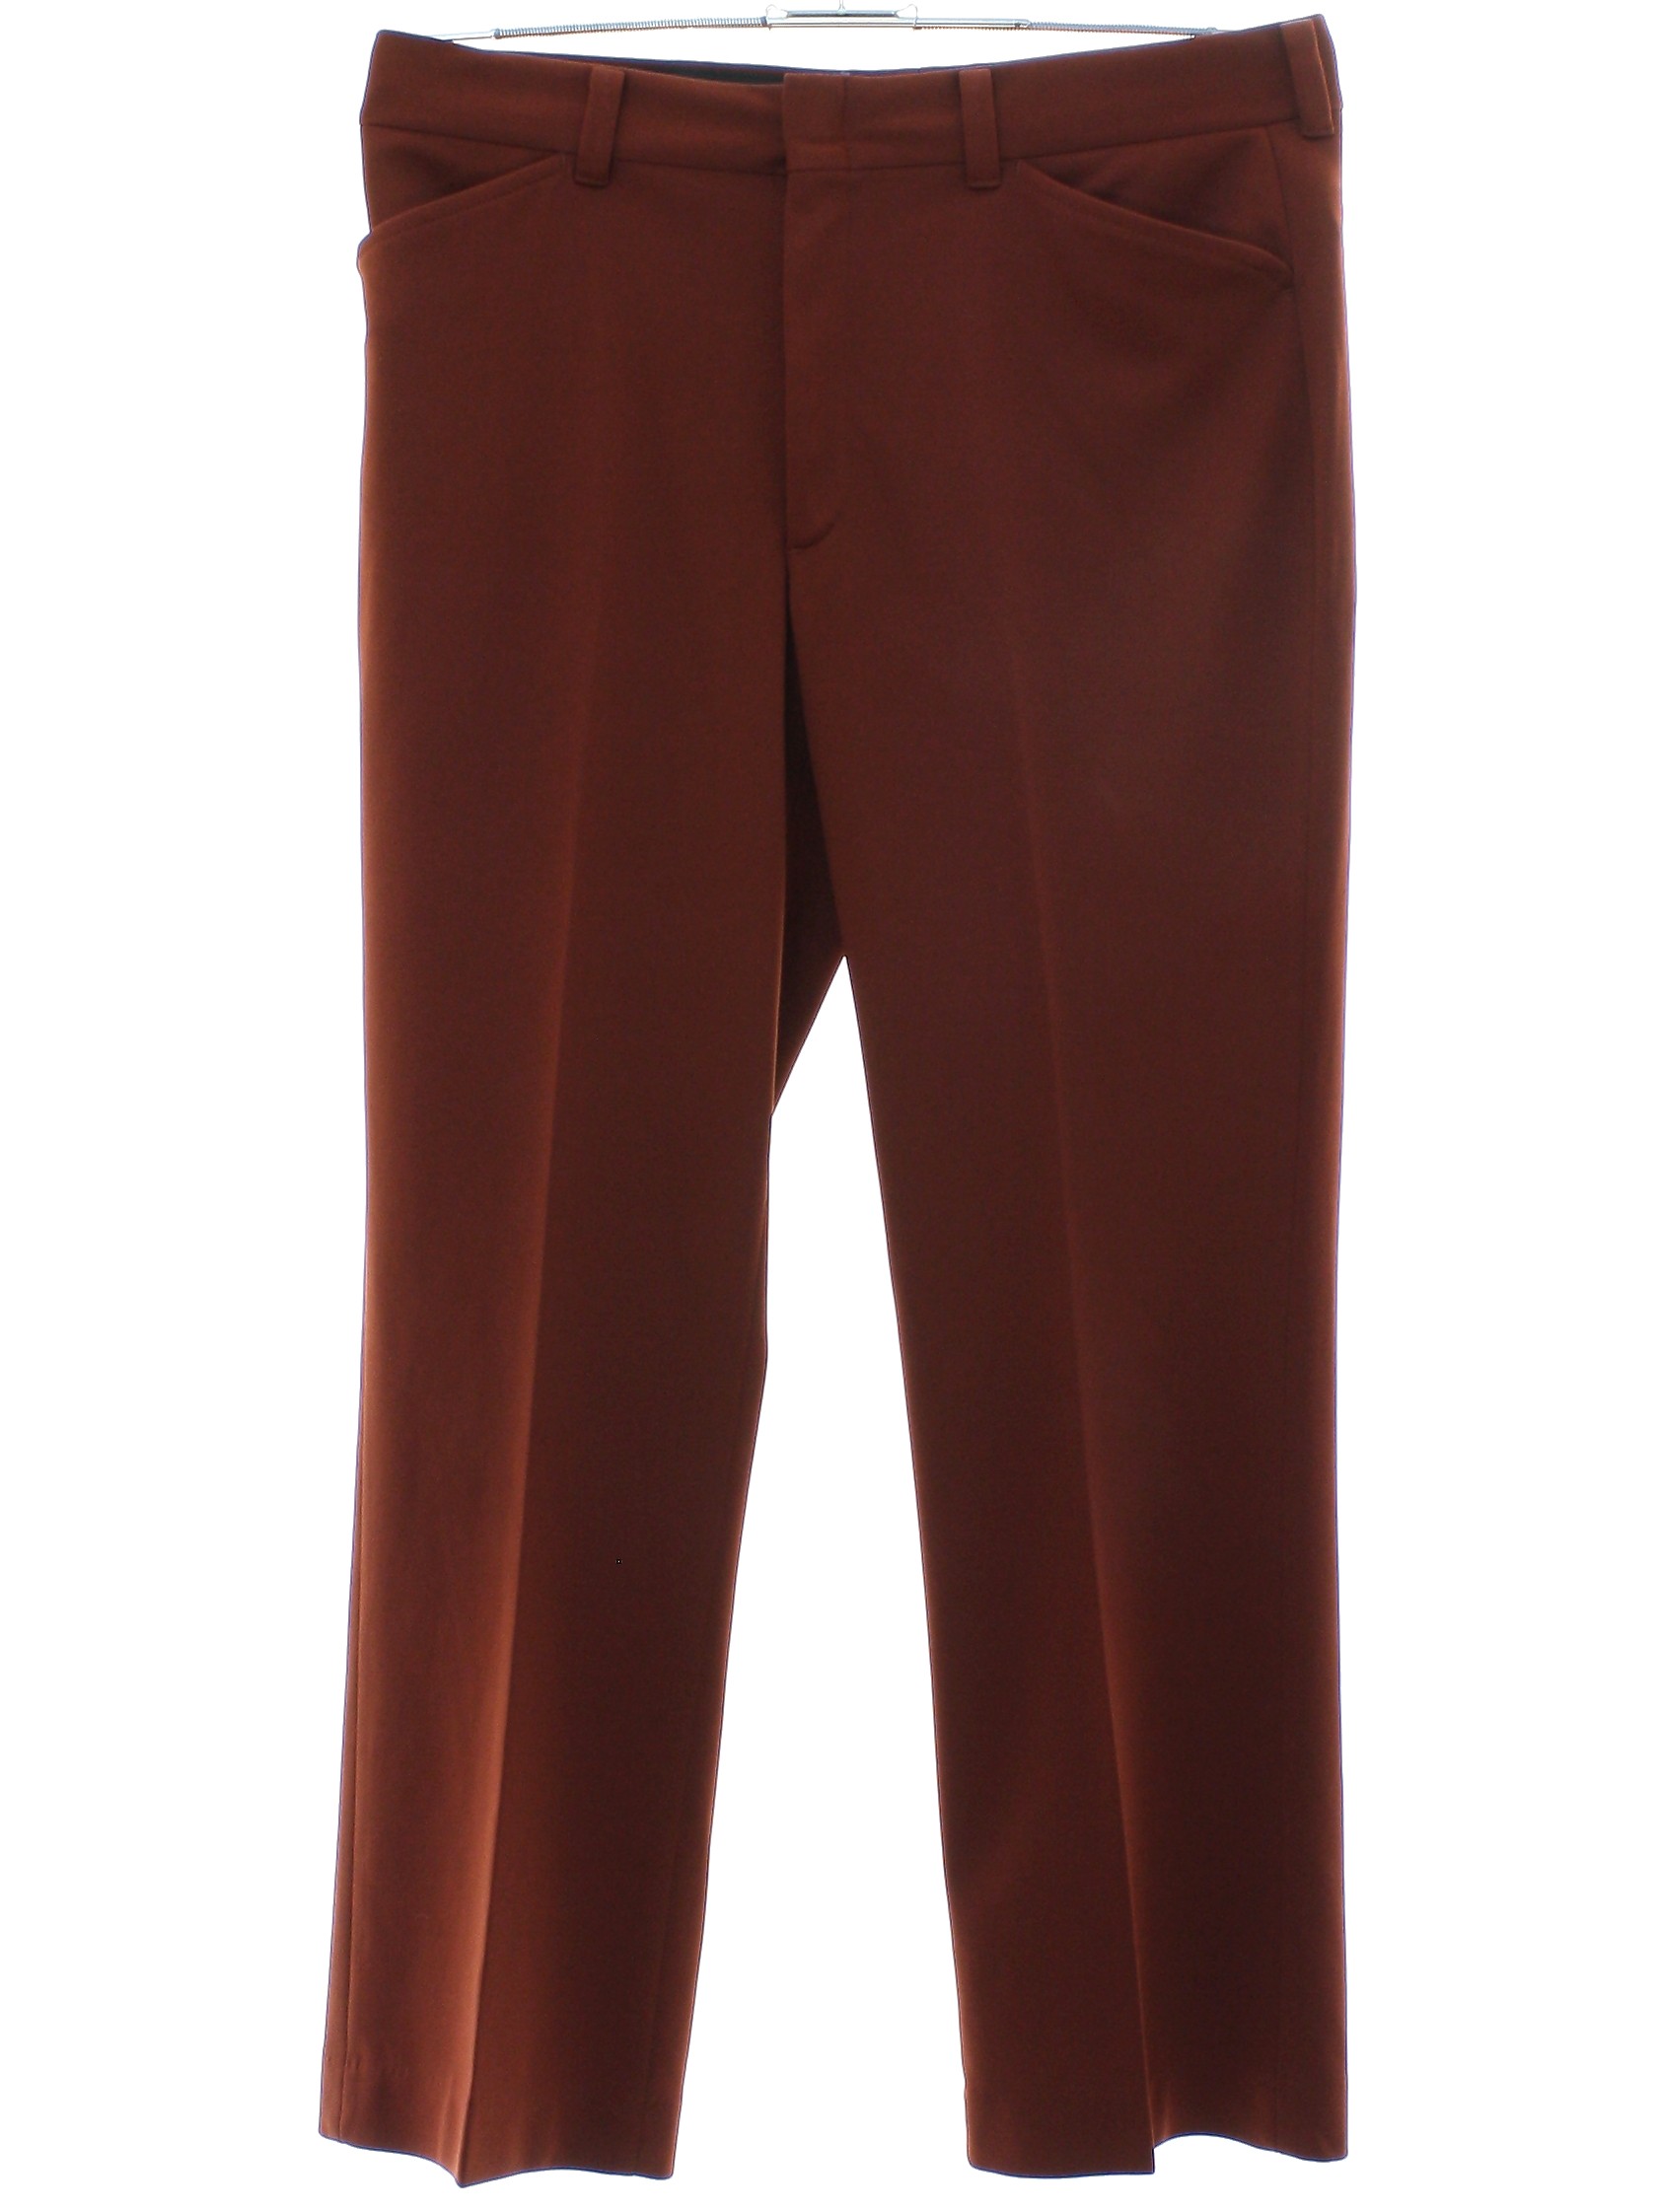 Retro Seventies Pants: 70s -Farah- Mens dark rust brown solid colored ...